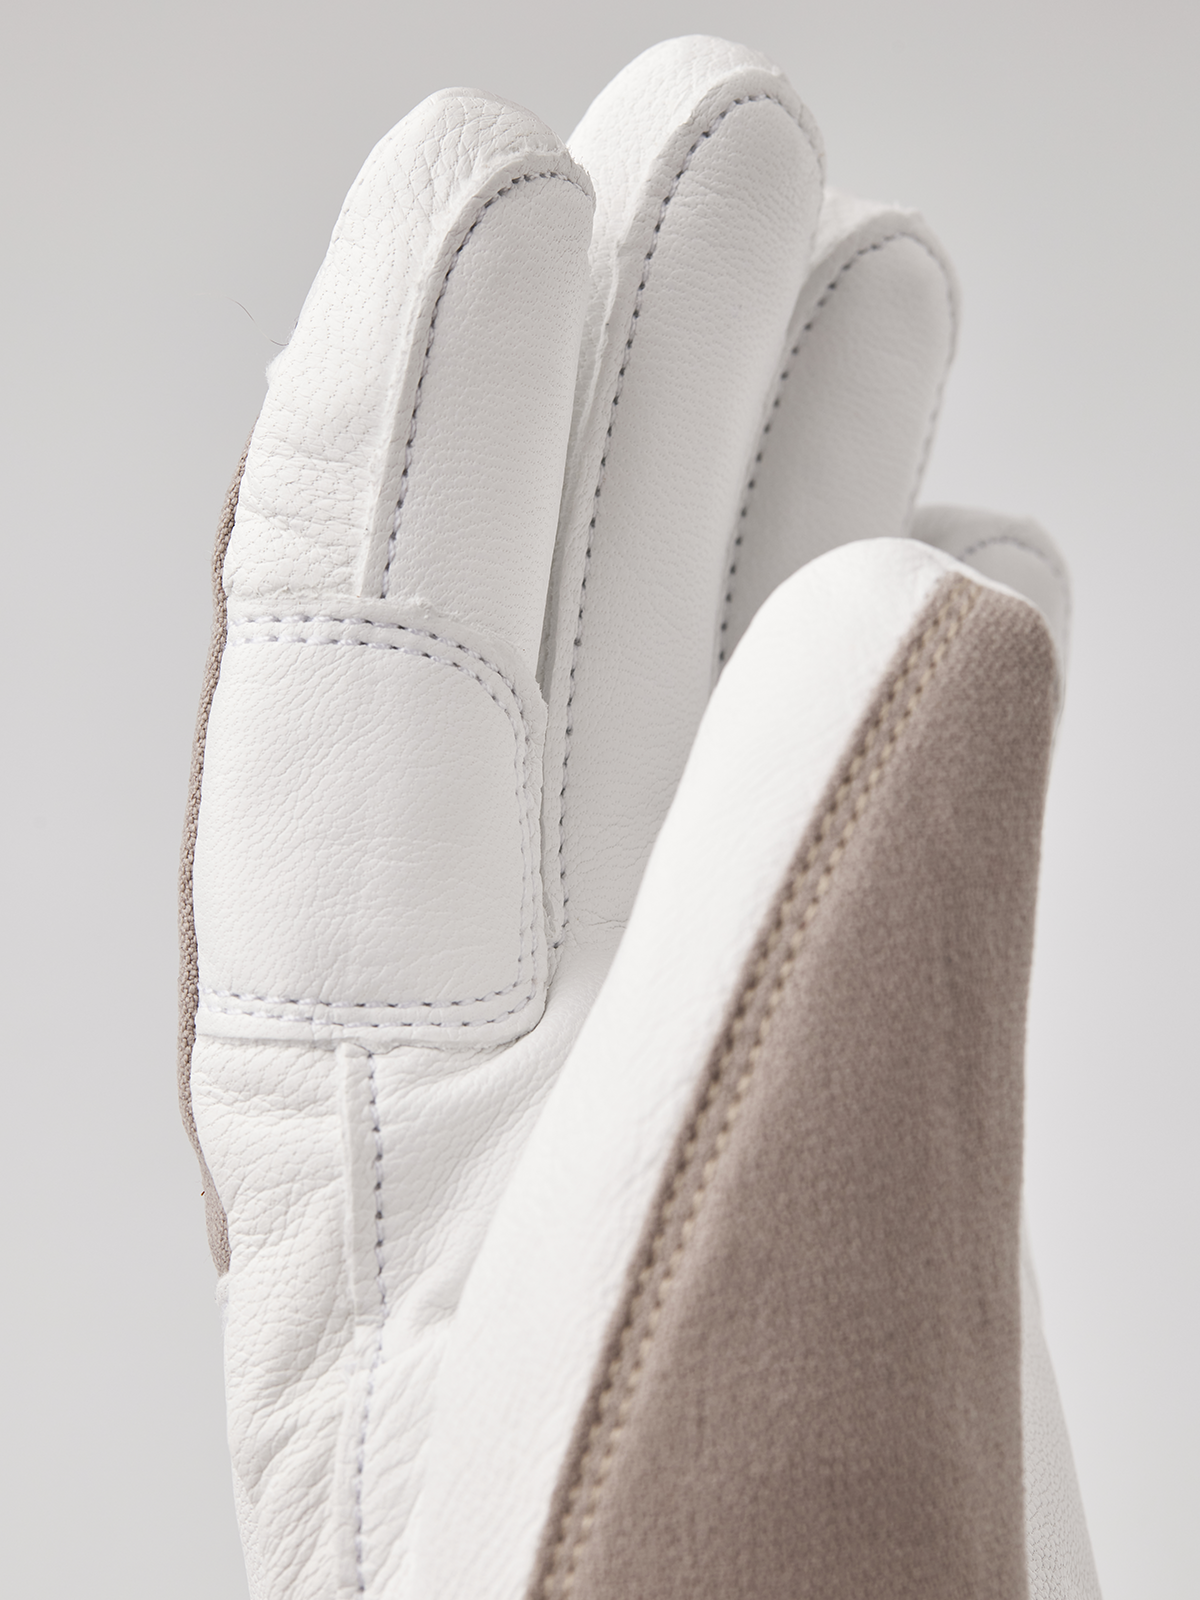 Voss CZone - Beige | Hestra Gloves